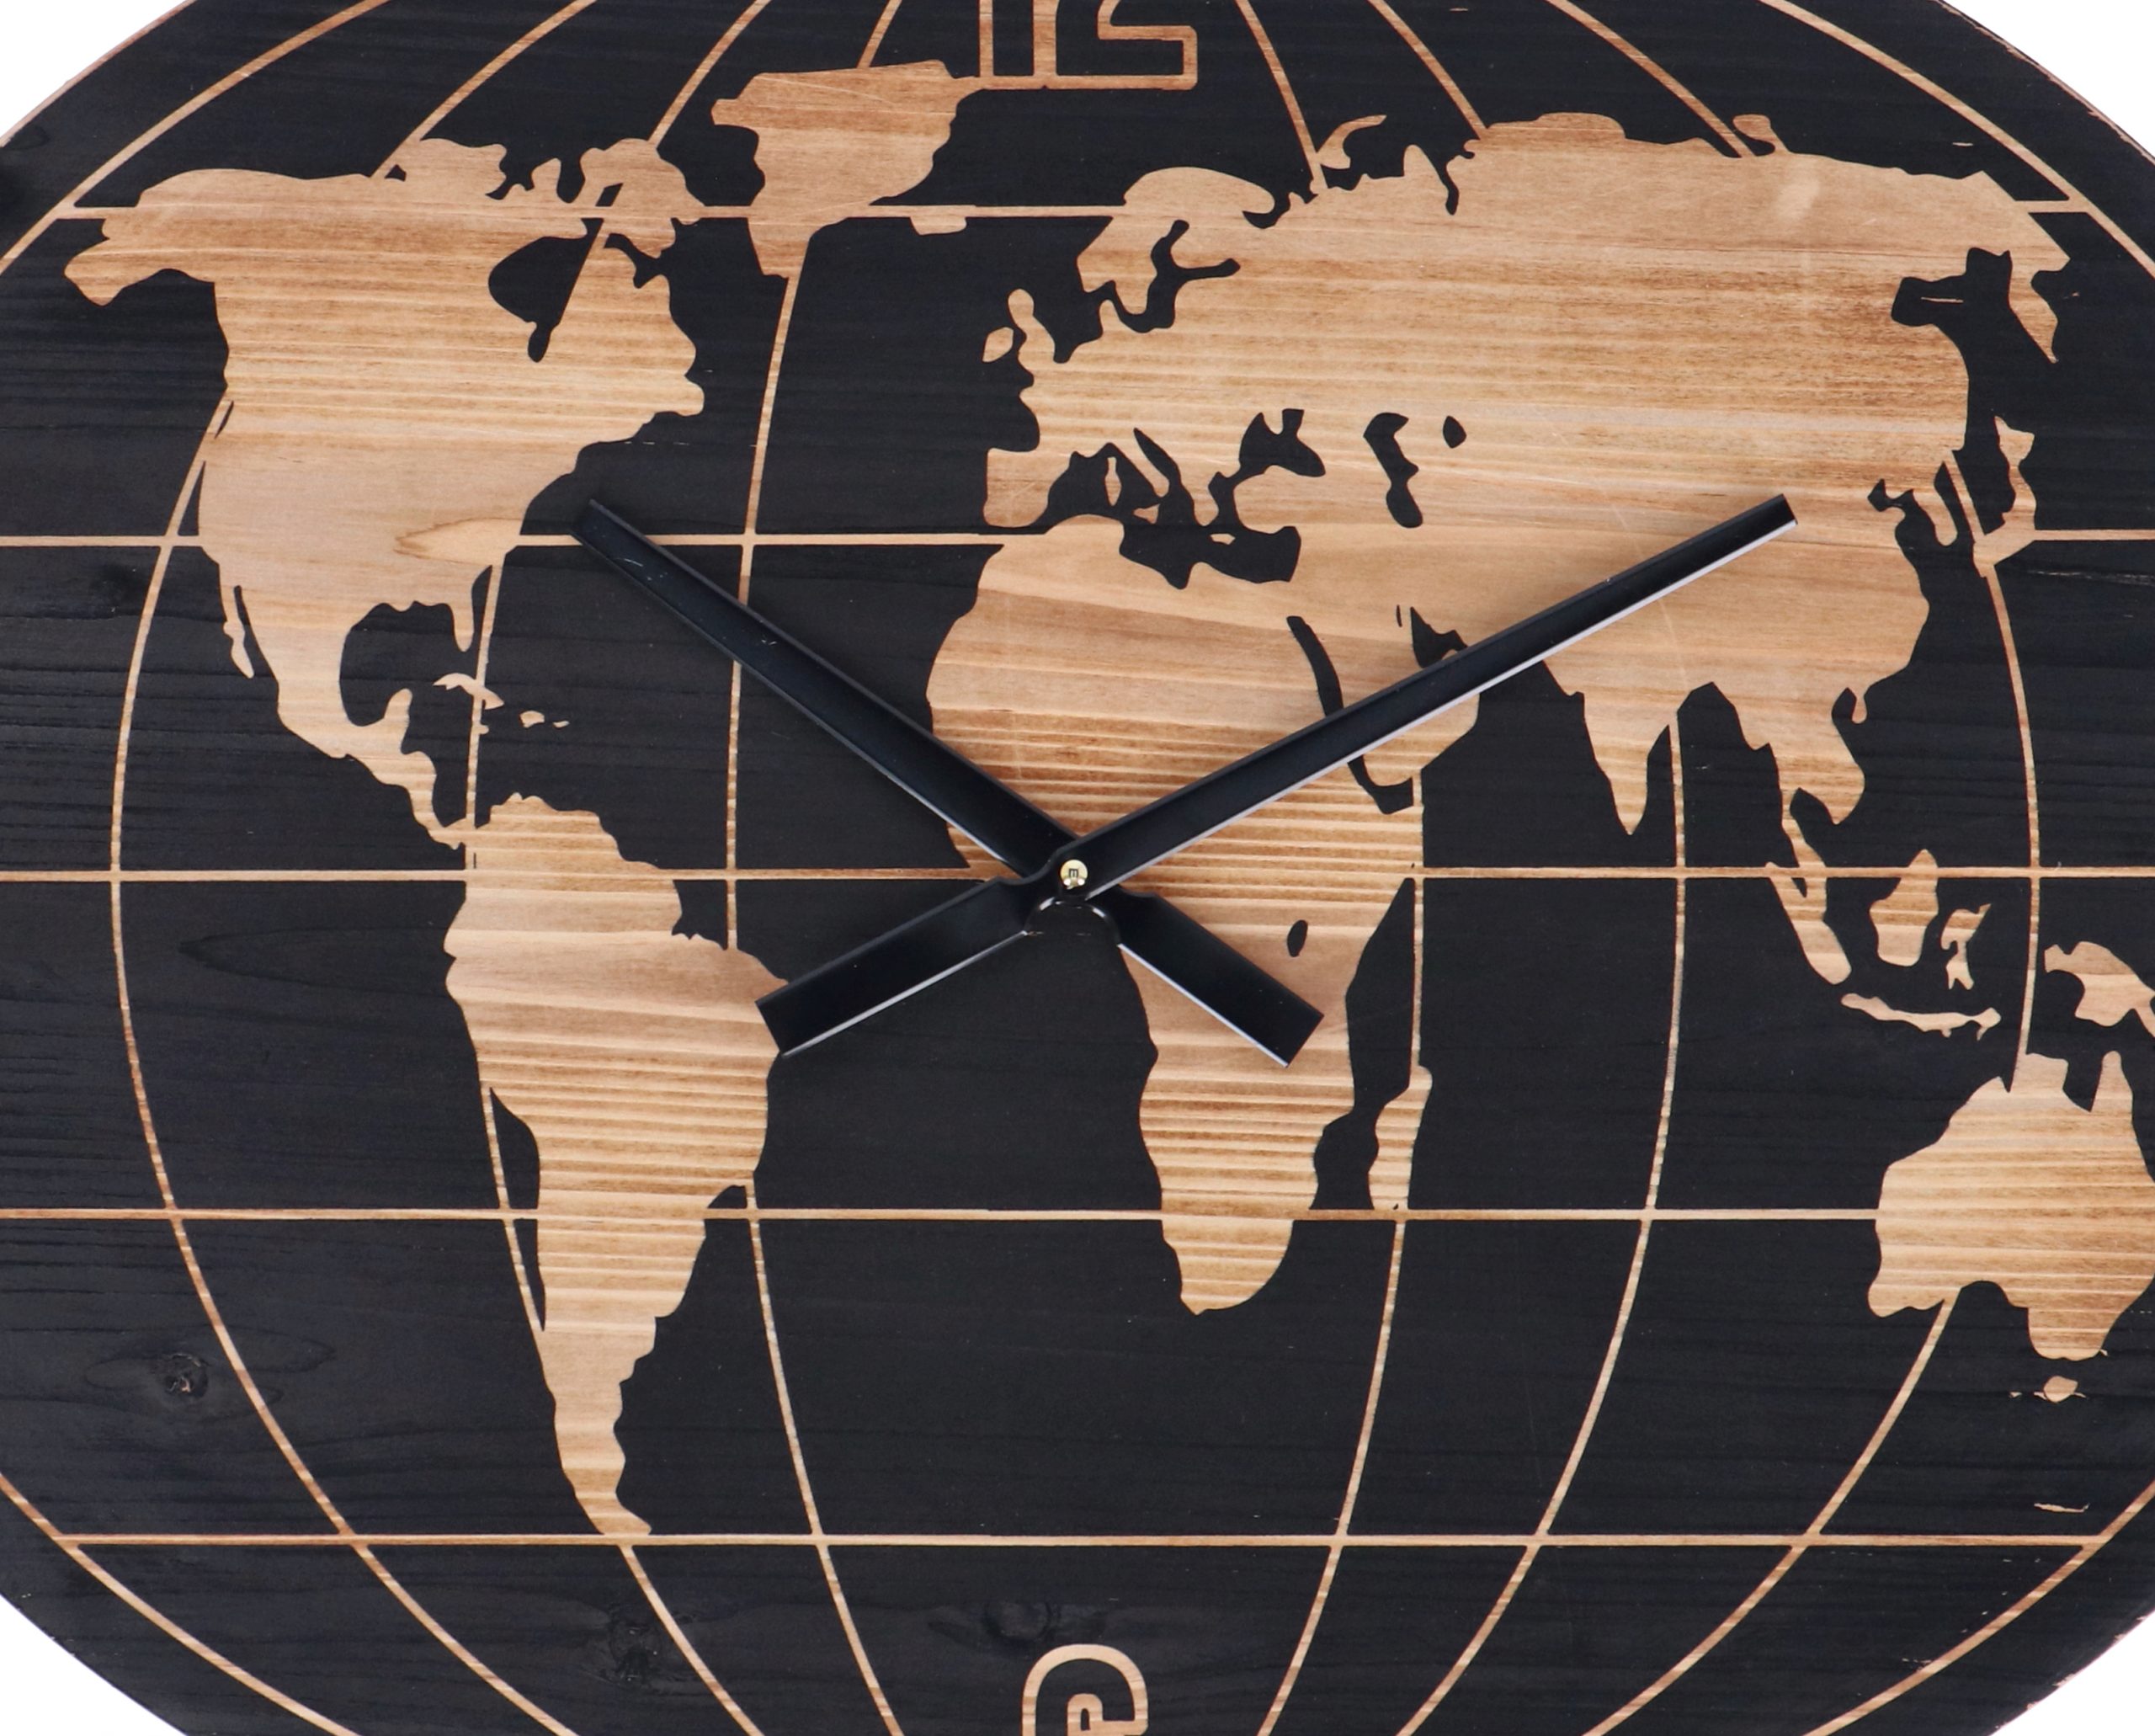 Orologio da parete planisfero mappa del mondo ovale moderno 70x45